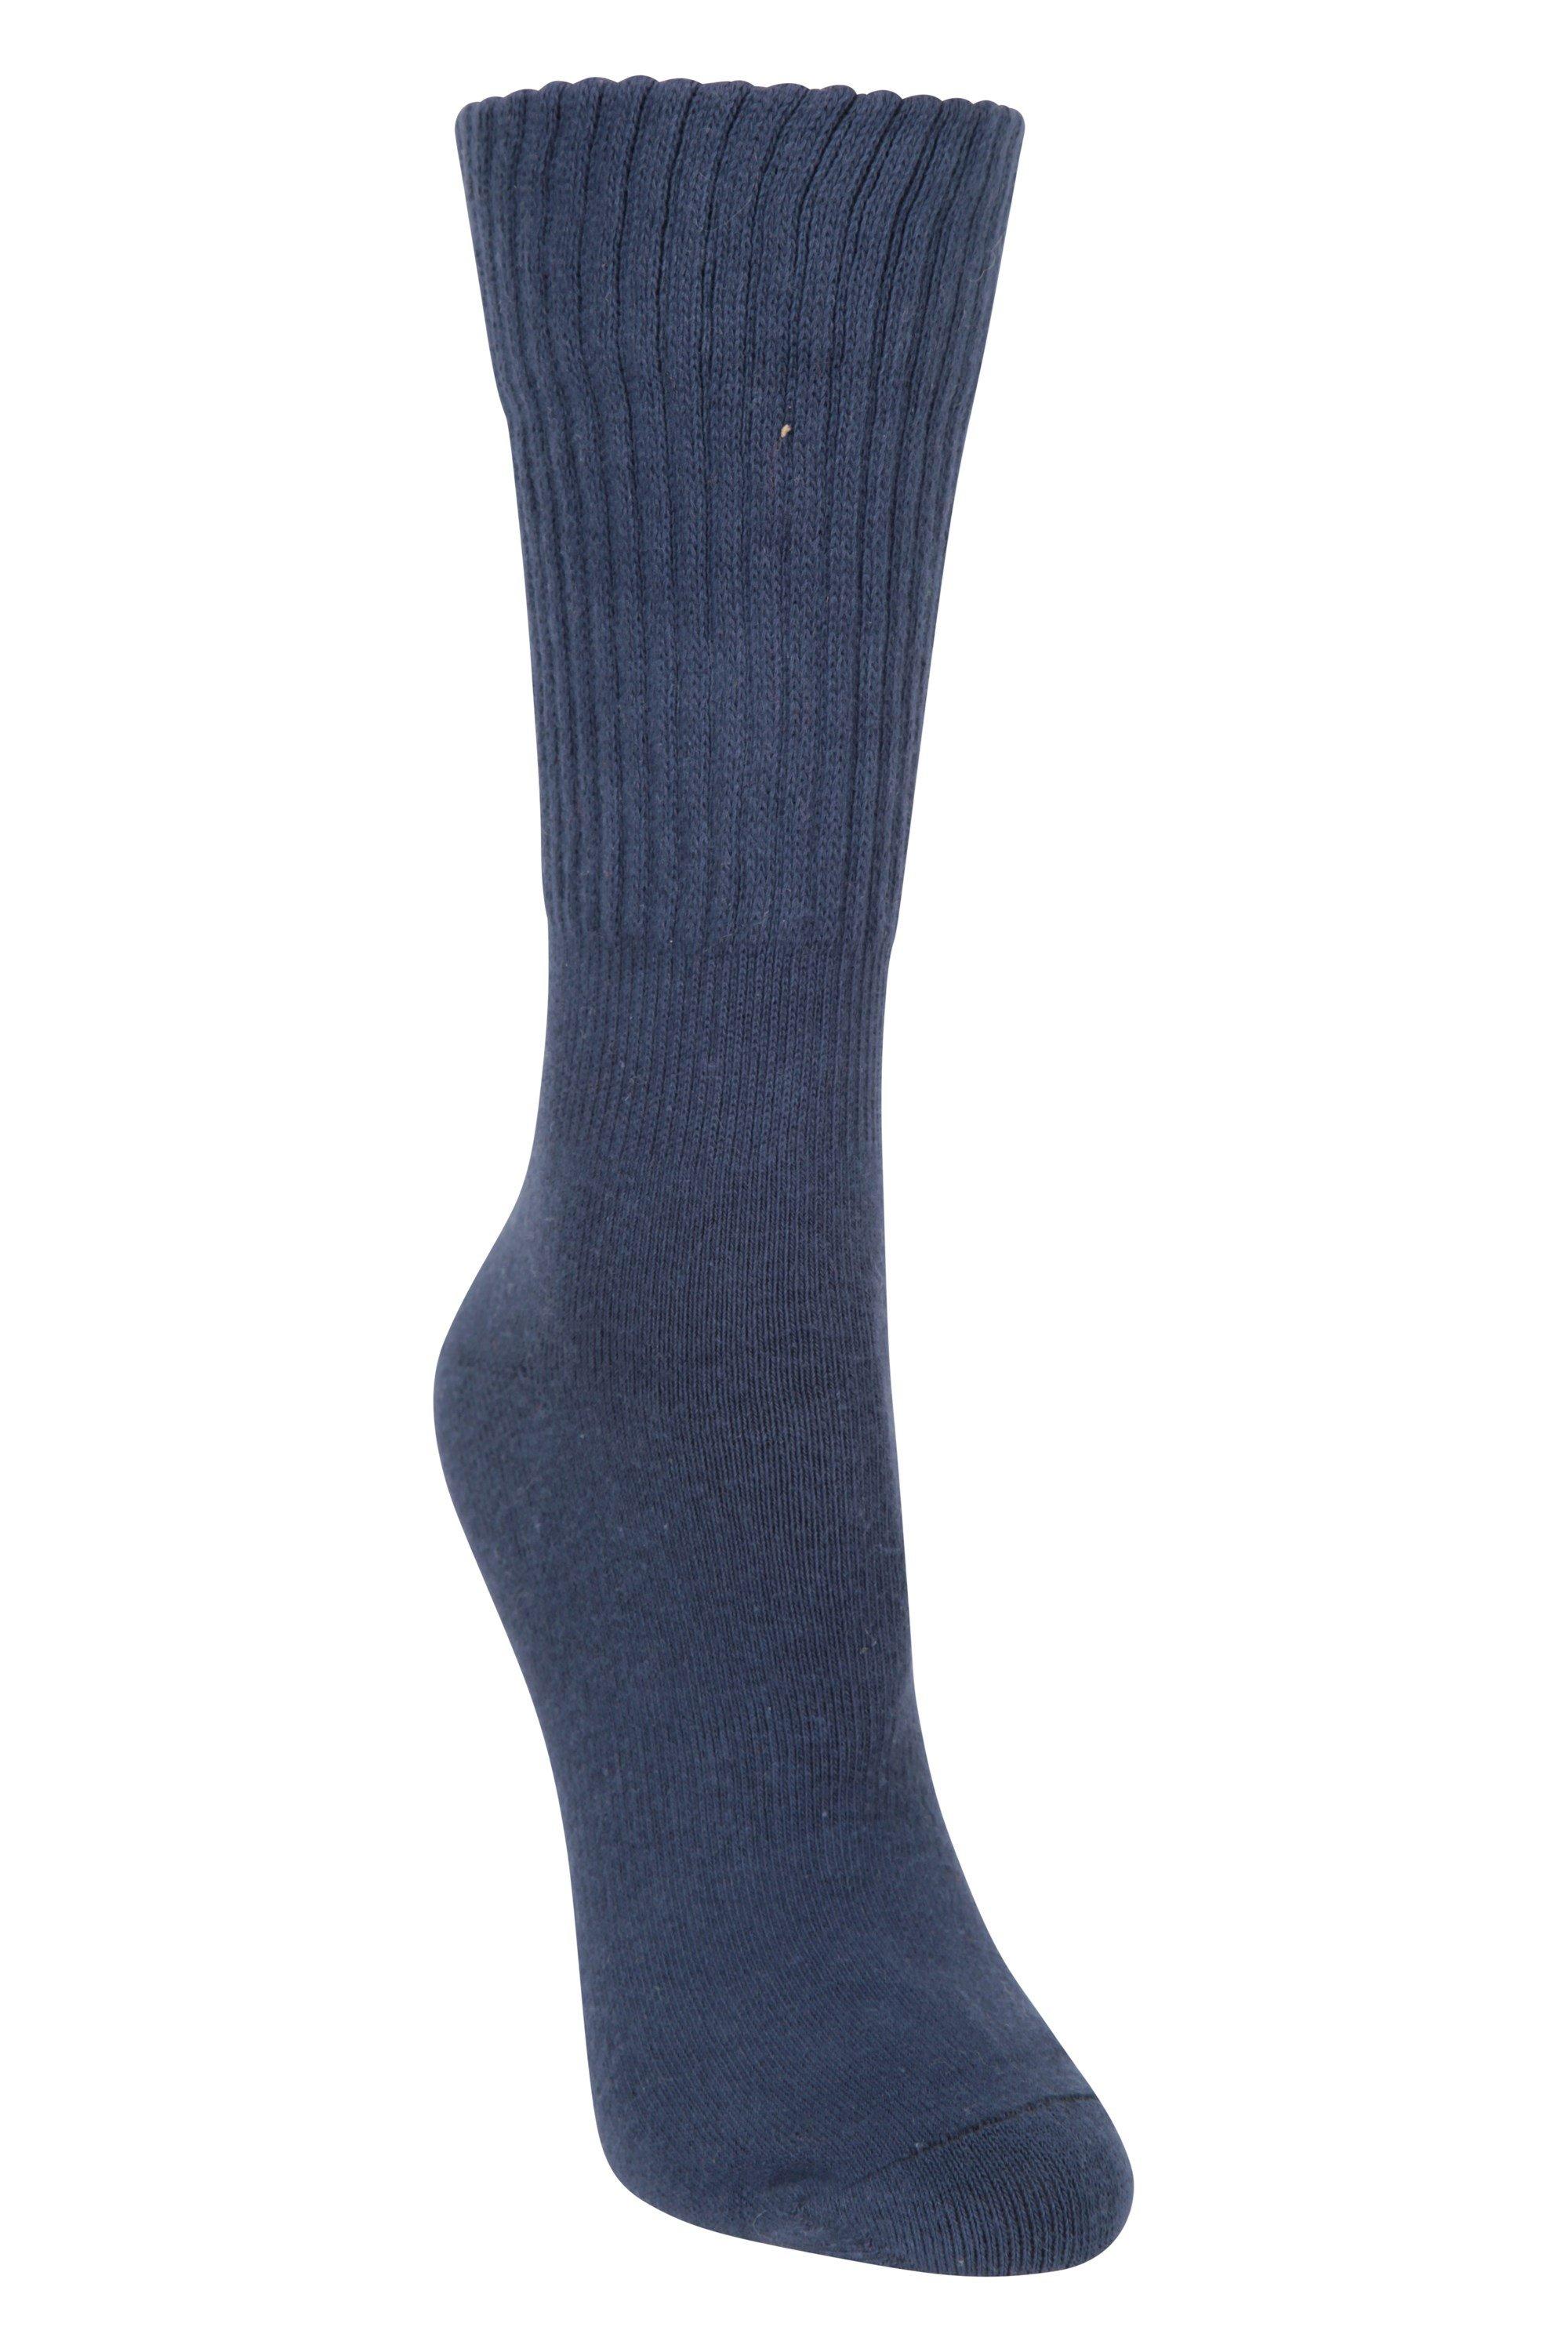 Socks Double Layer  Lightweight Walking Sock